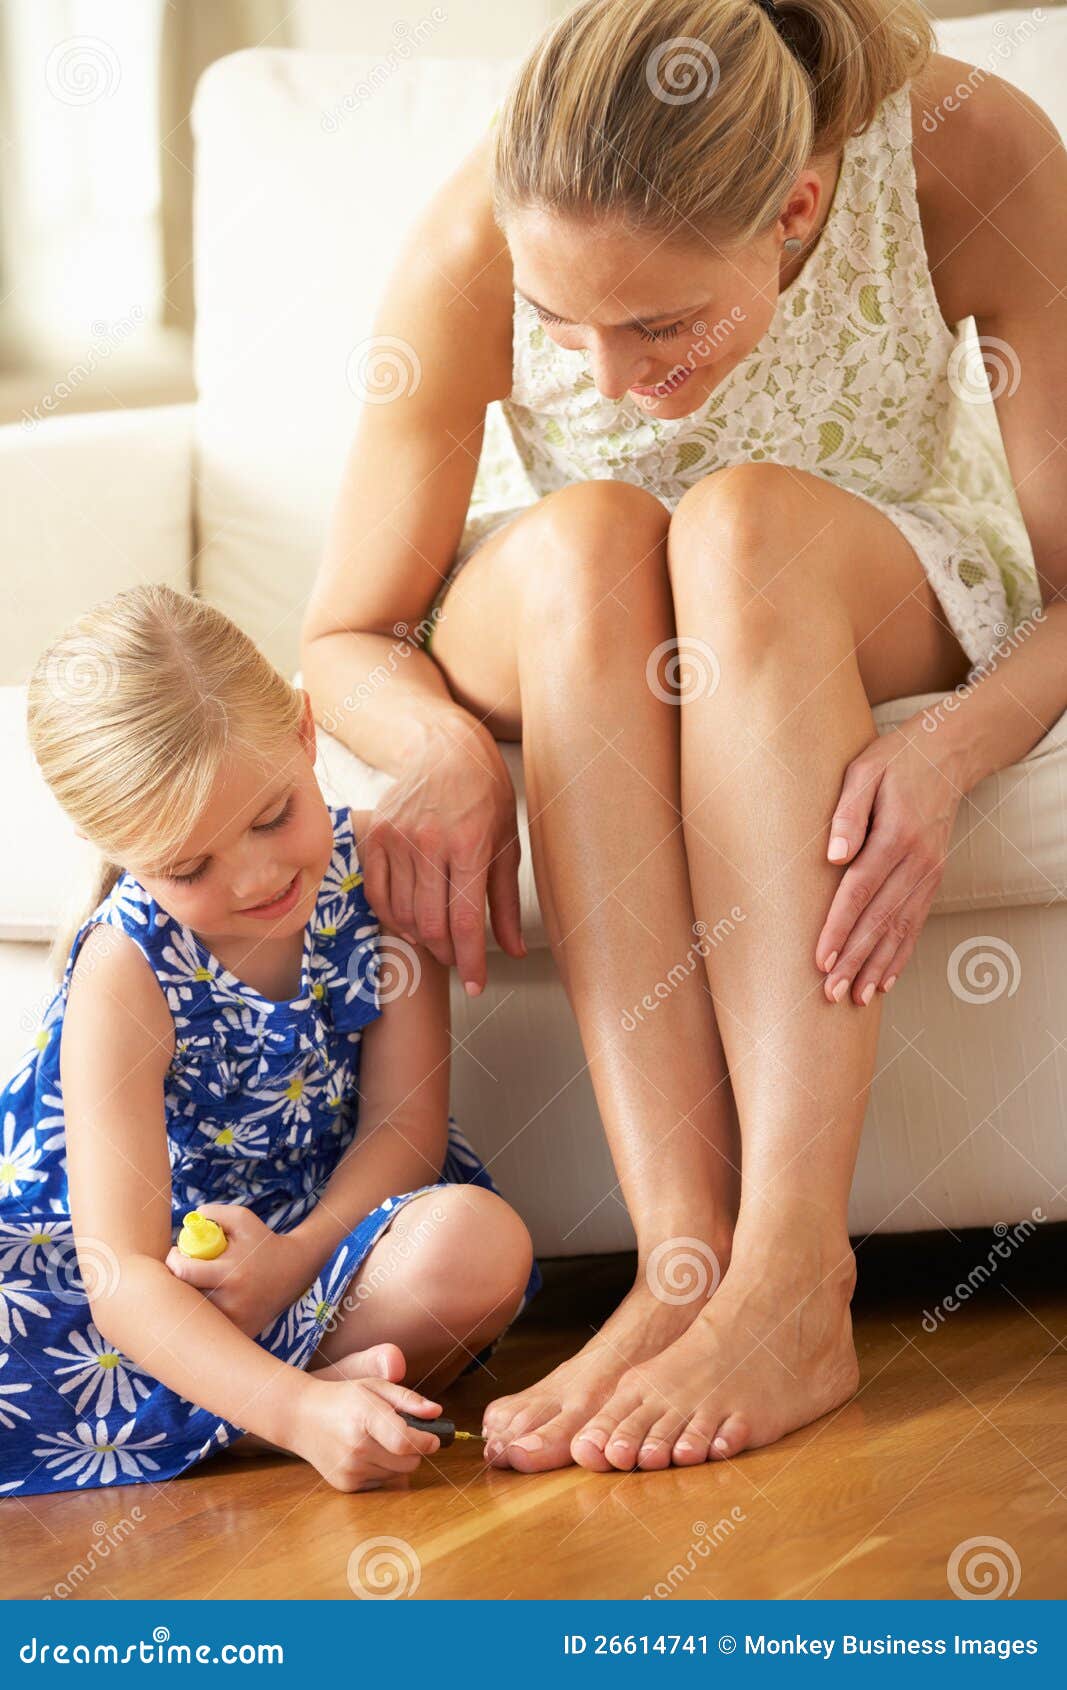 Полизал маме рассказ. Детские ступни девочек облизывают. Девочка красит ногти на ногах маме. Мать и дочь ступни. Стопы детей девочек.